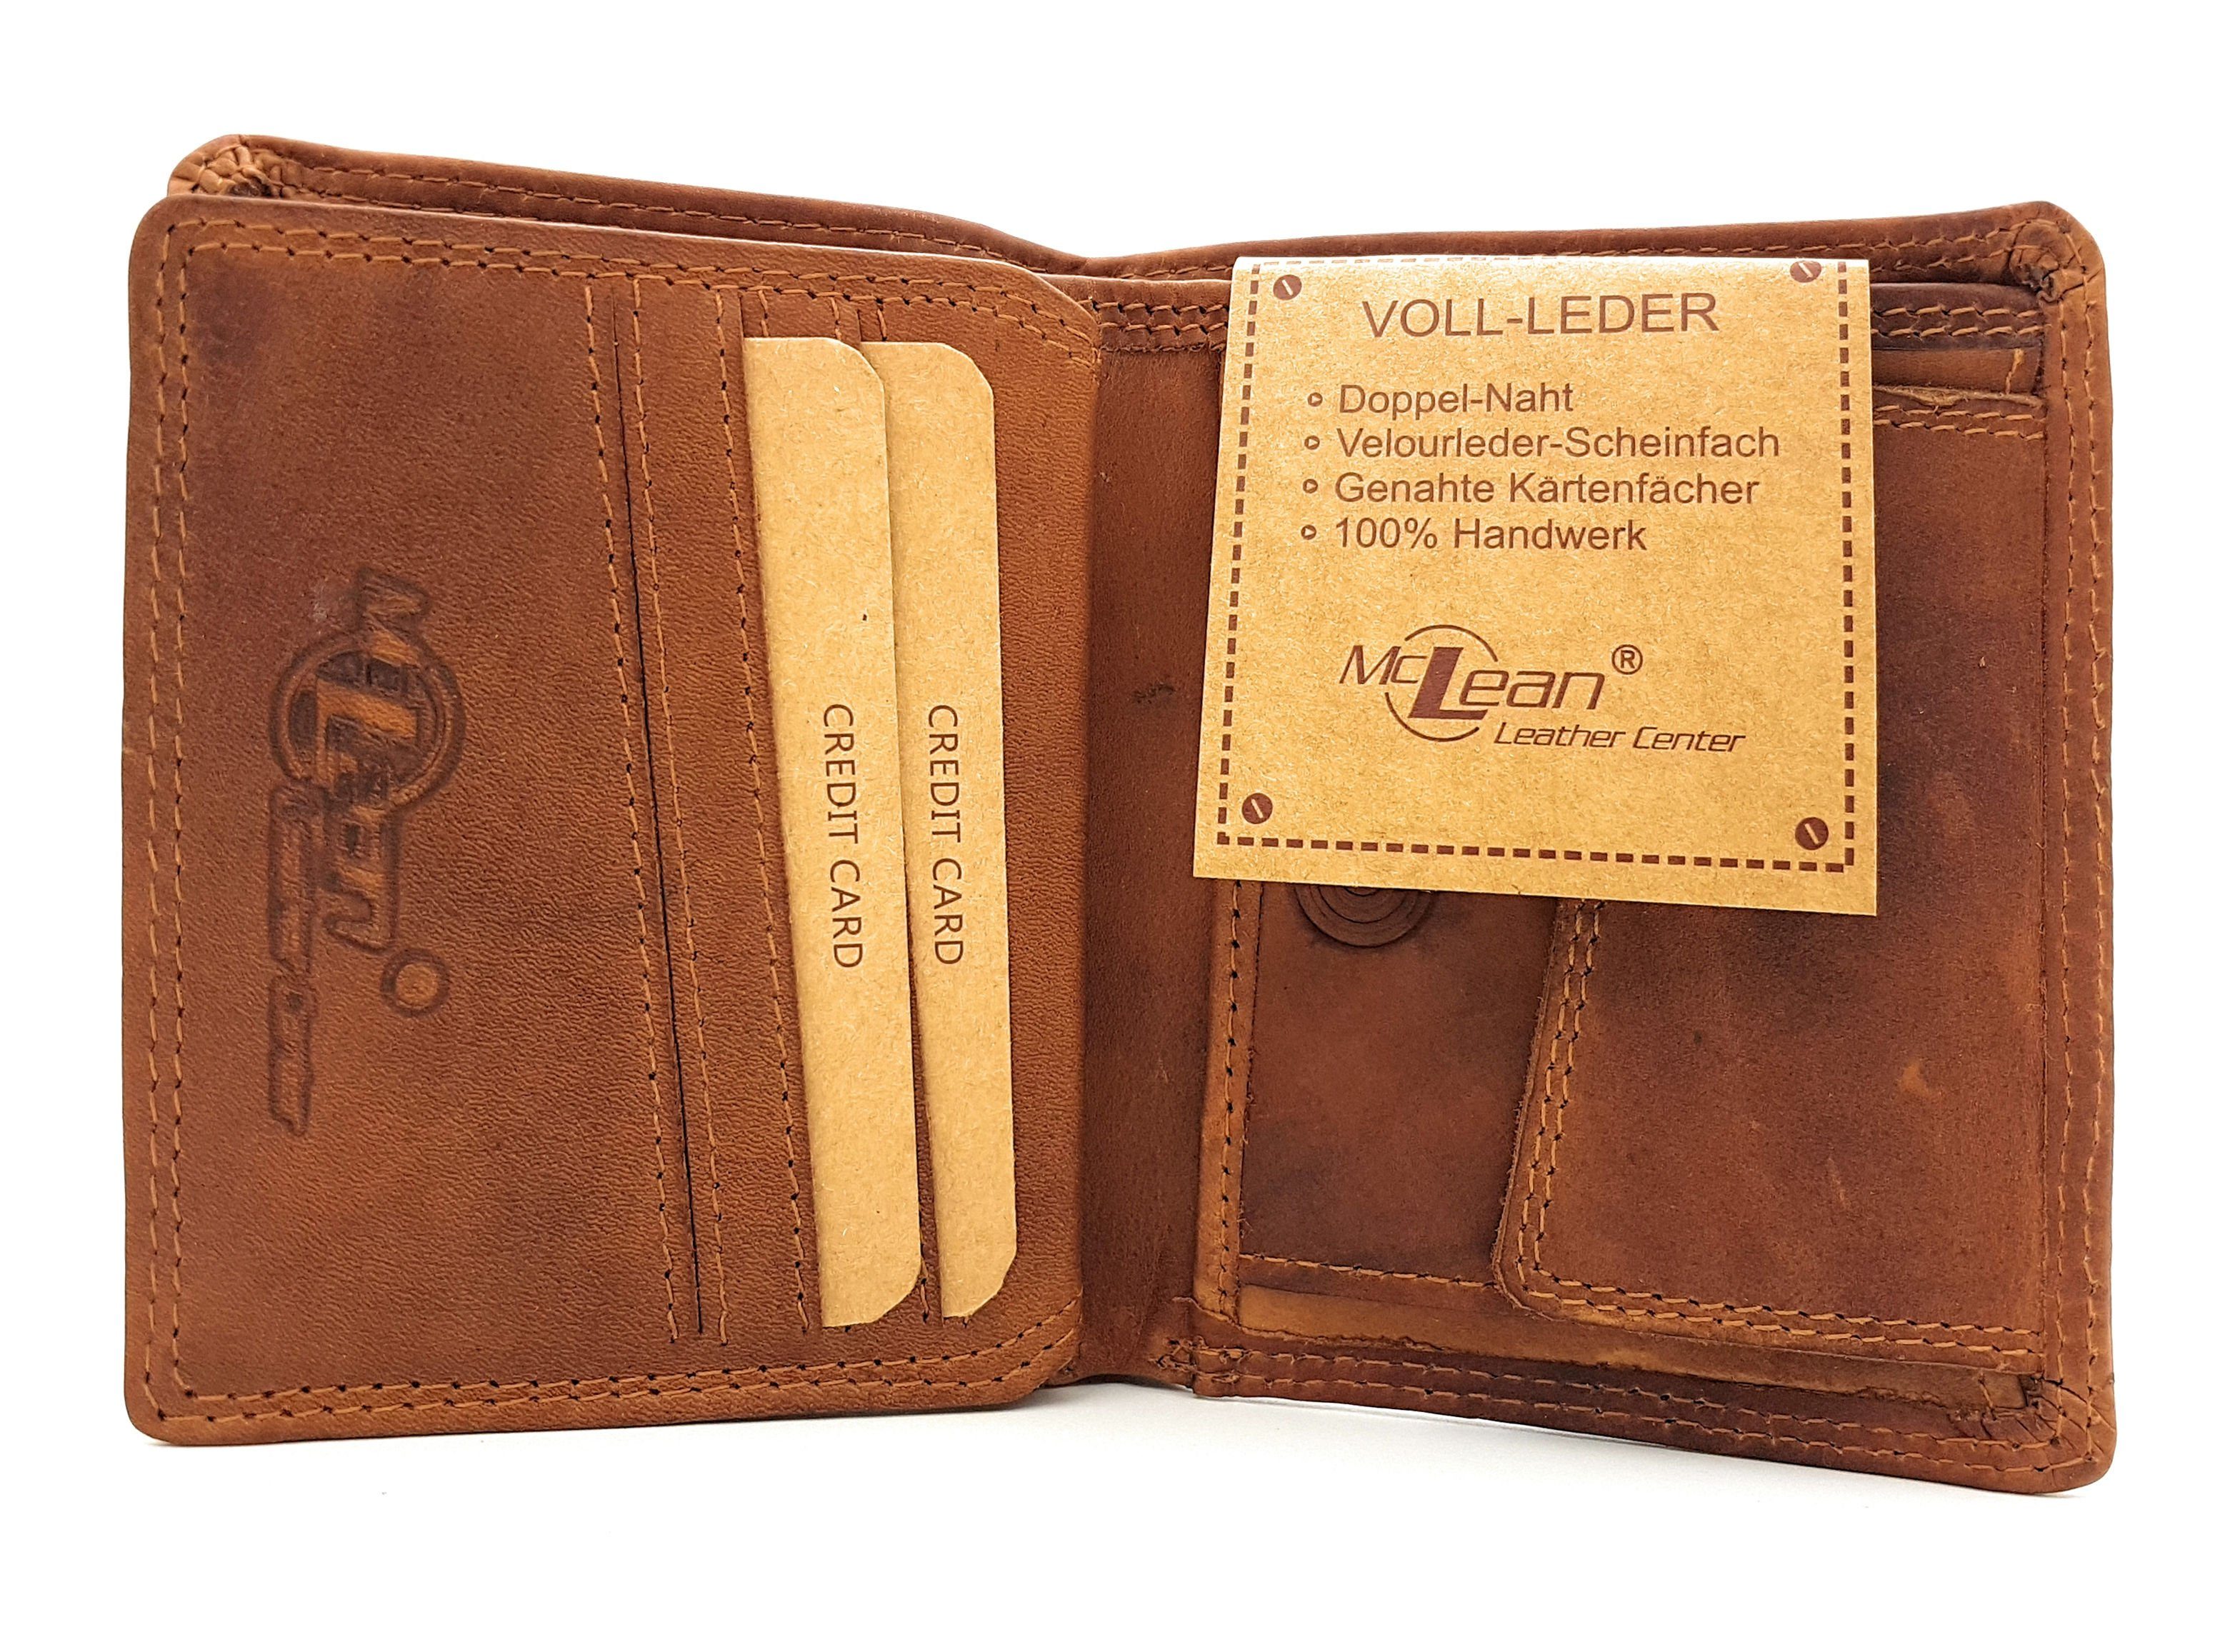 McLean Mini Geldbörse Vintage, echt Volllederausstattung, handlich und Midi mit Schutz, Fromat, Leder, RFID kompakt